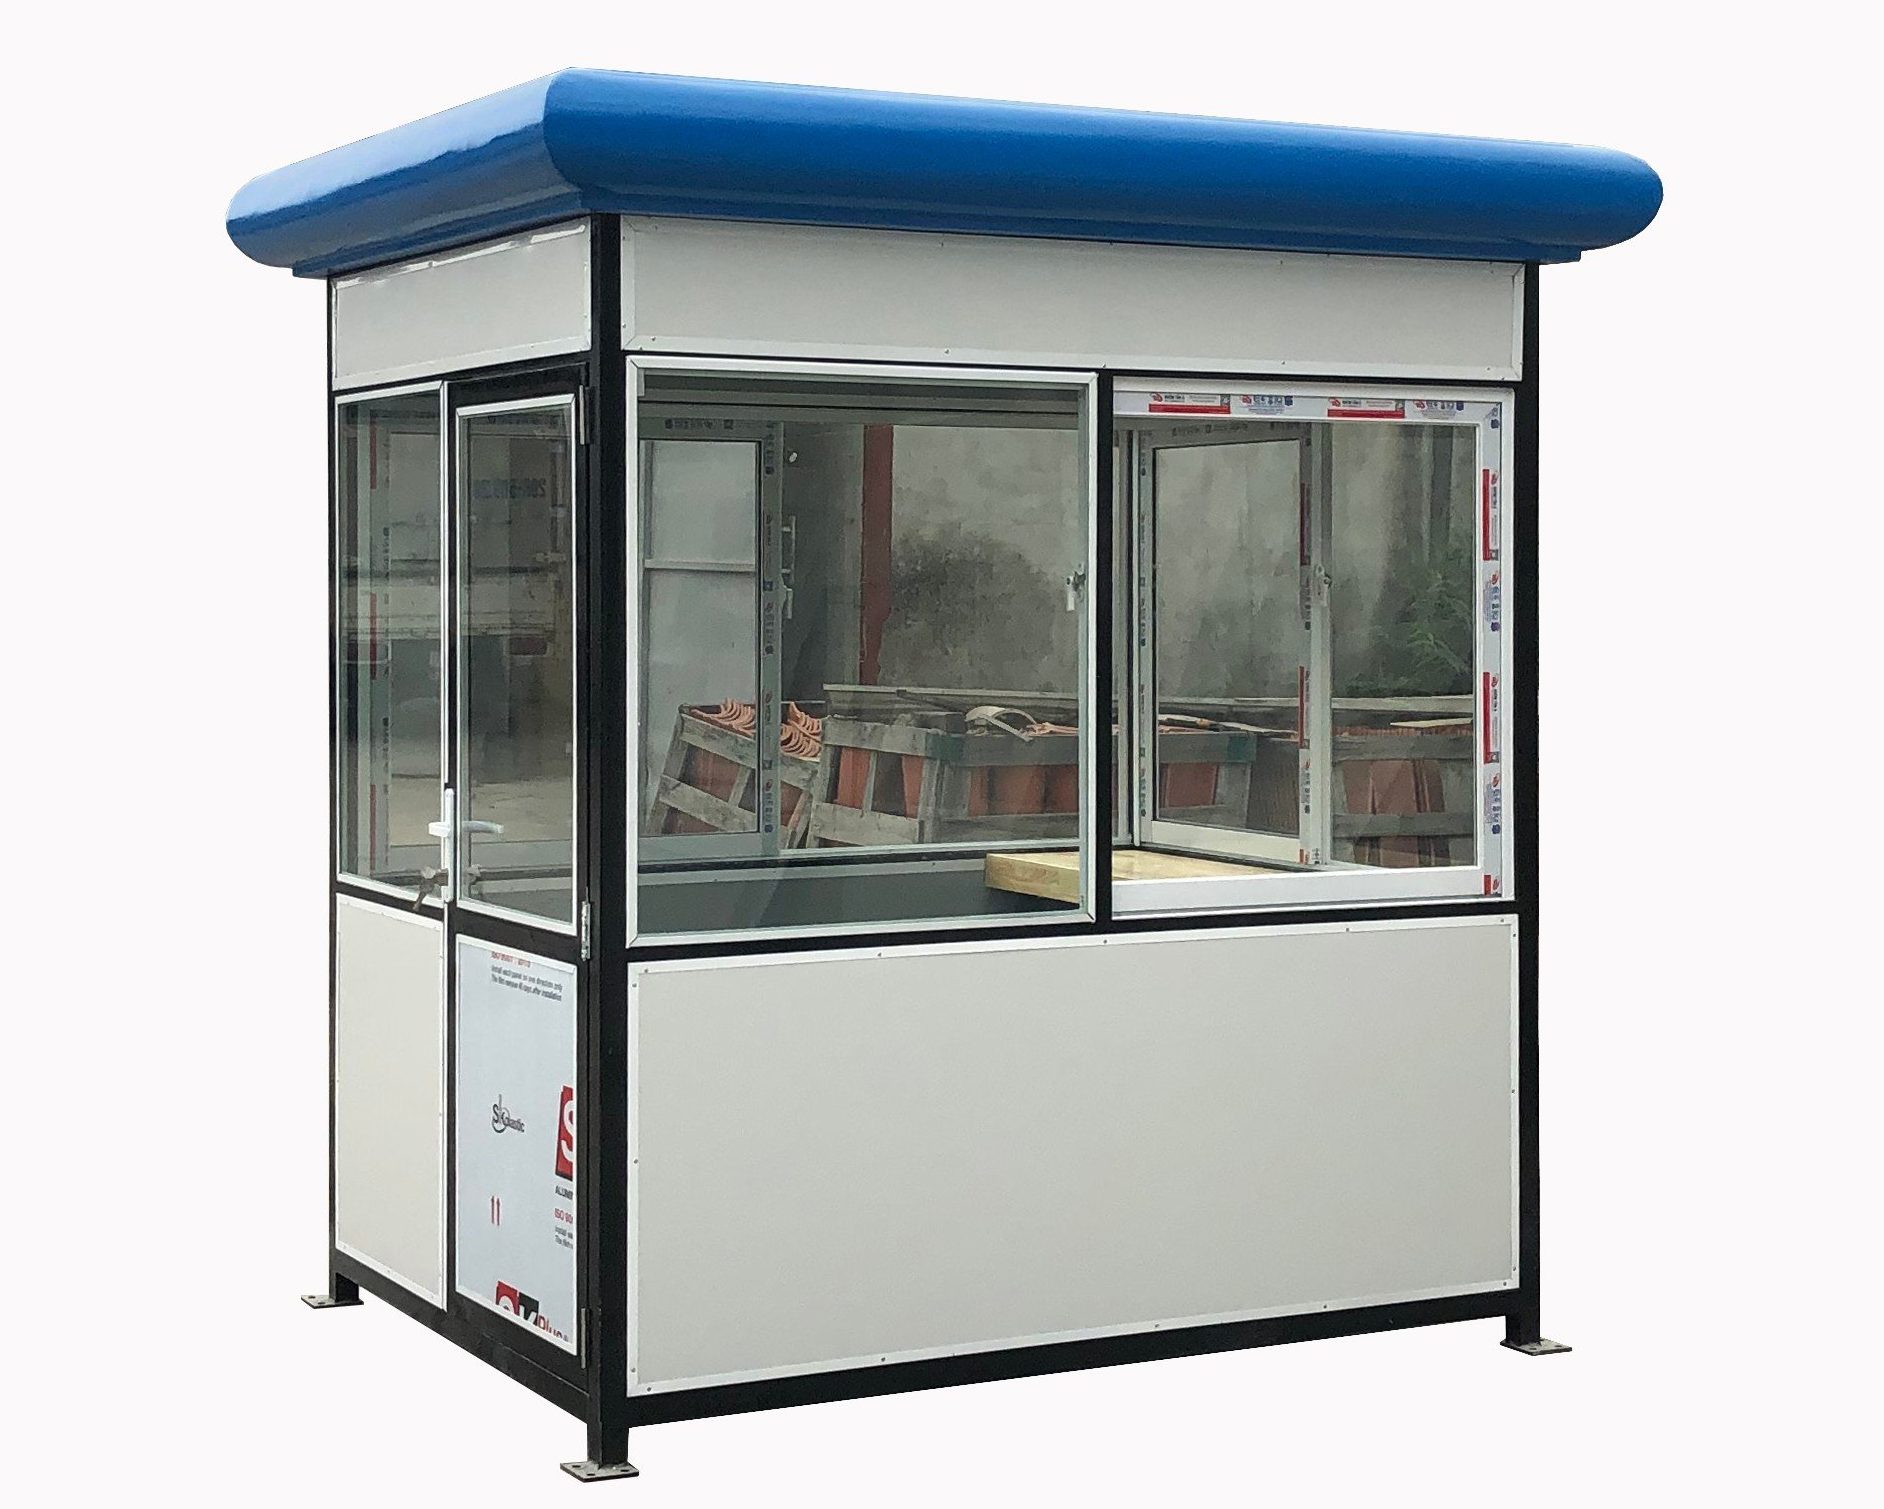 Trạm bảo vệ giá rẻ mái bằng composite chống nóng